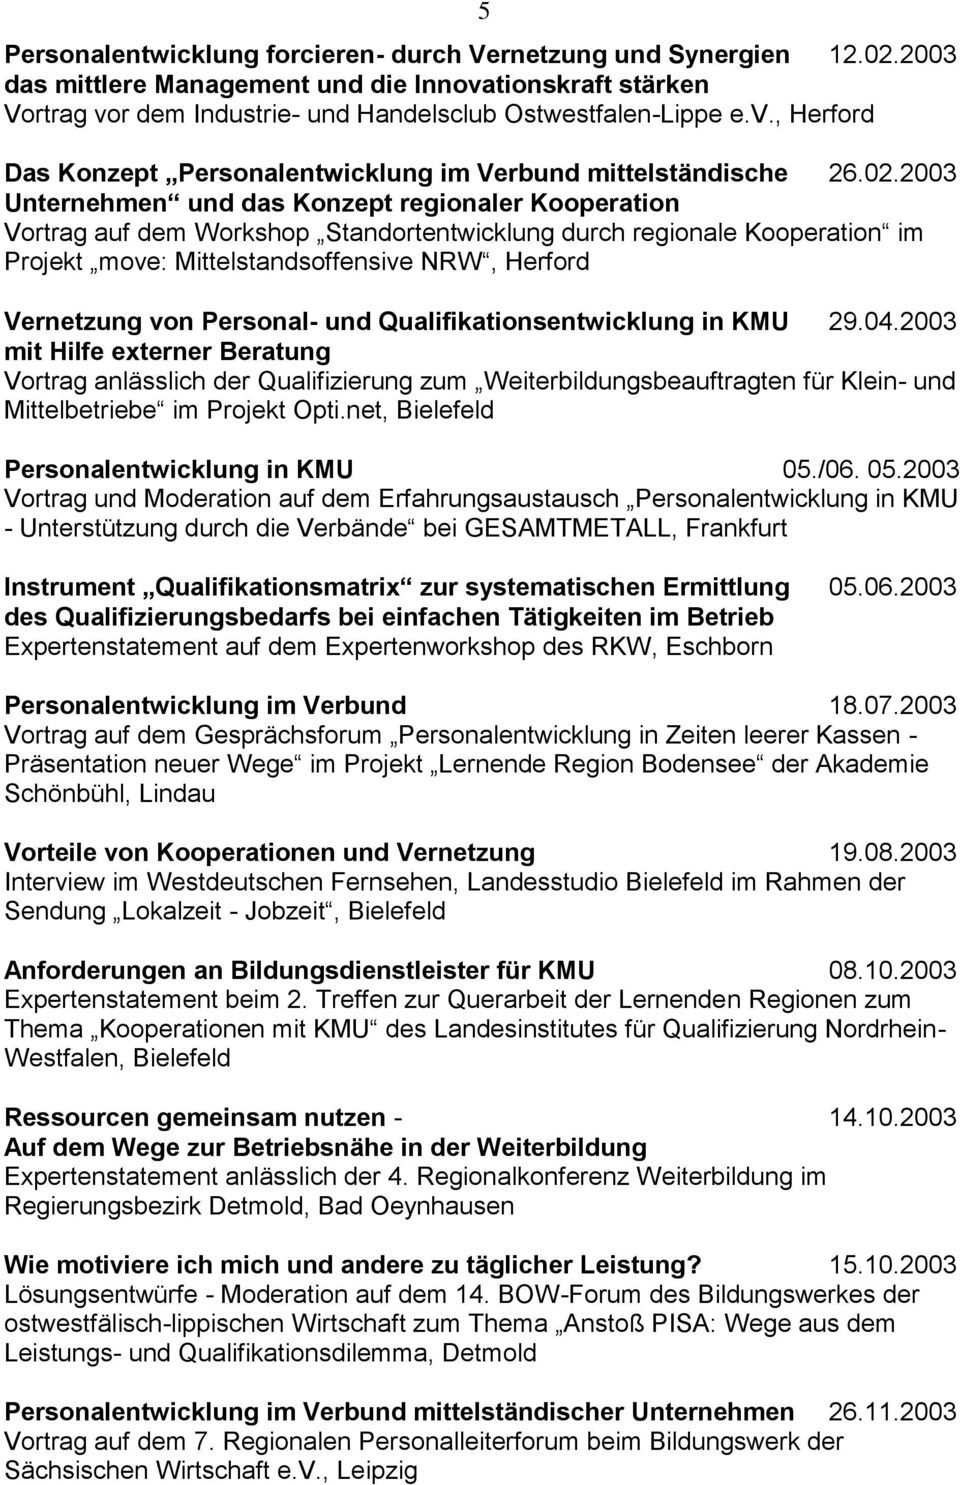 Personal- und Qualifikationsentwicklung in KMU 29.04.